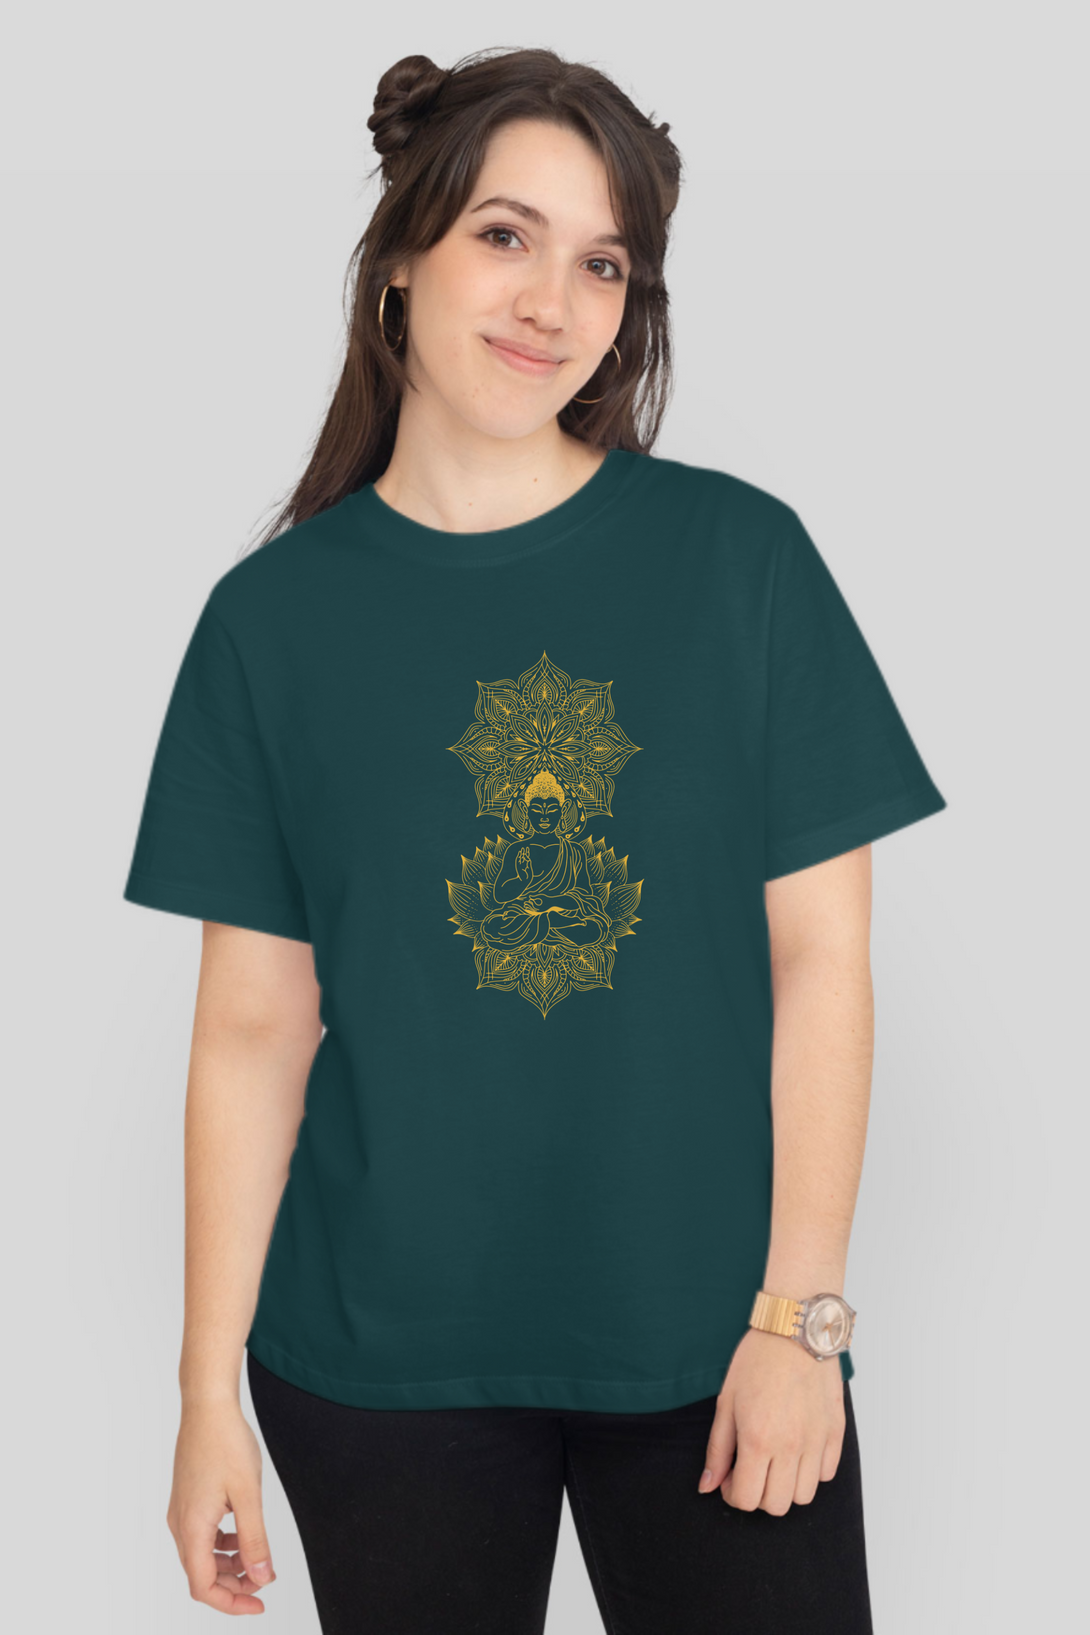 Enlightened Mandala Printed T-Shirt For Women - WowWaves - 8